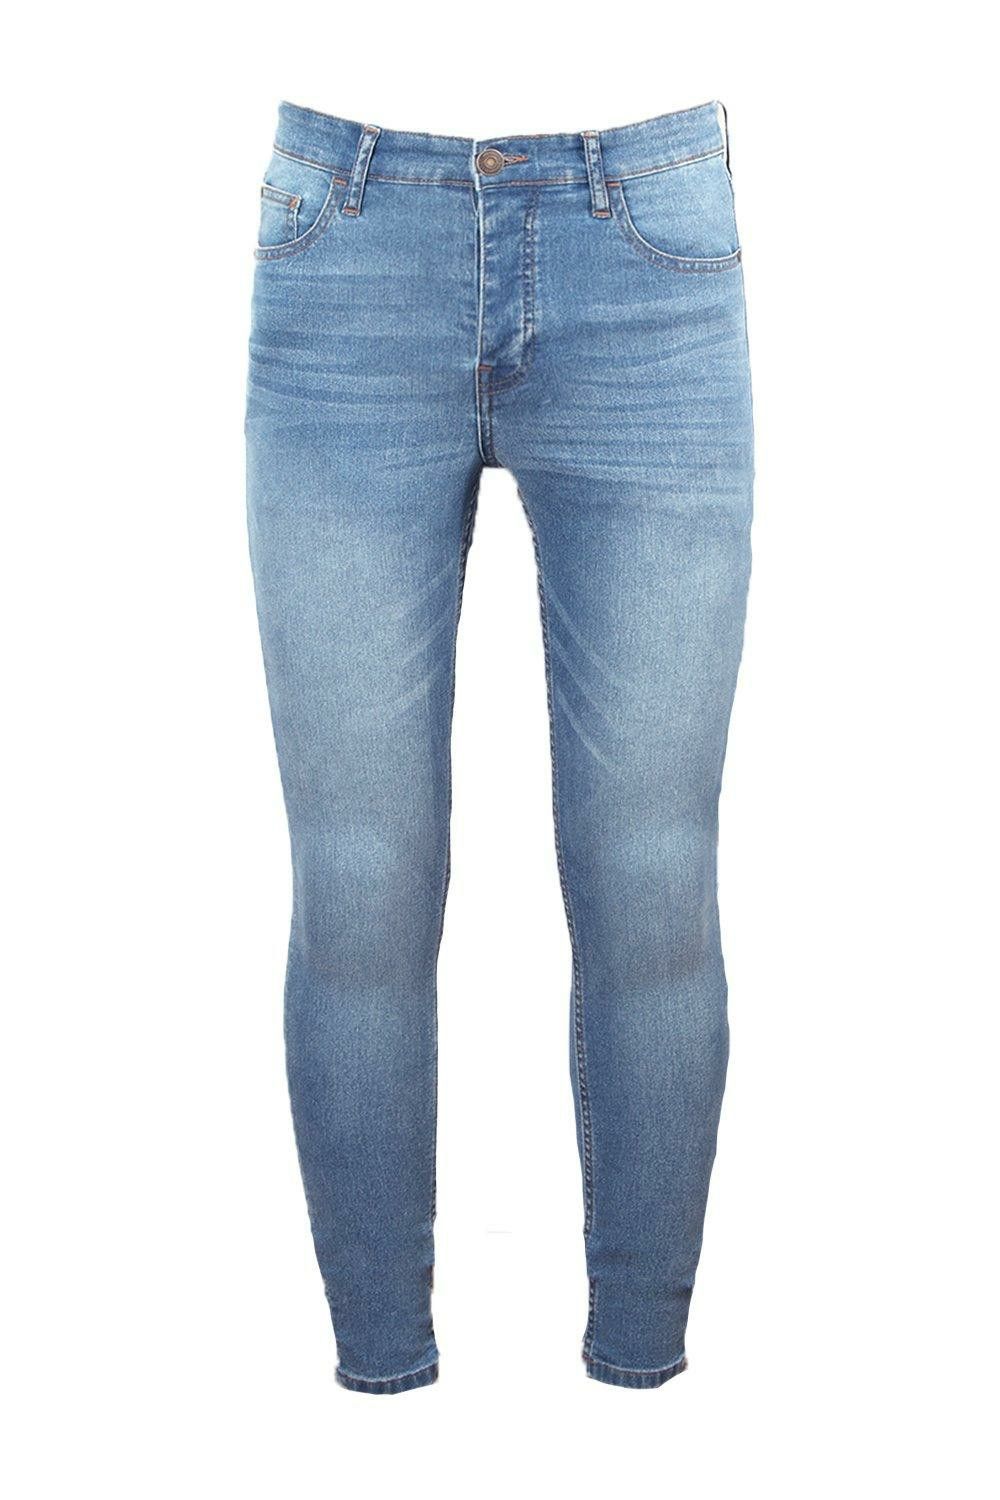 E0025|Super Skinny Stretch Jeans Size: 34